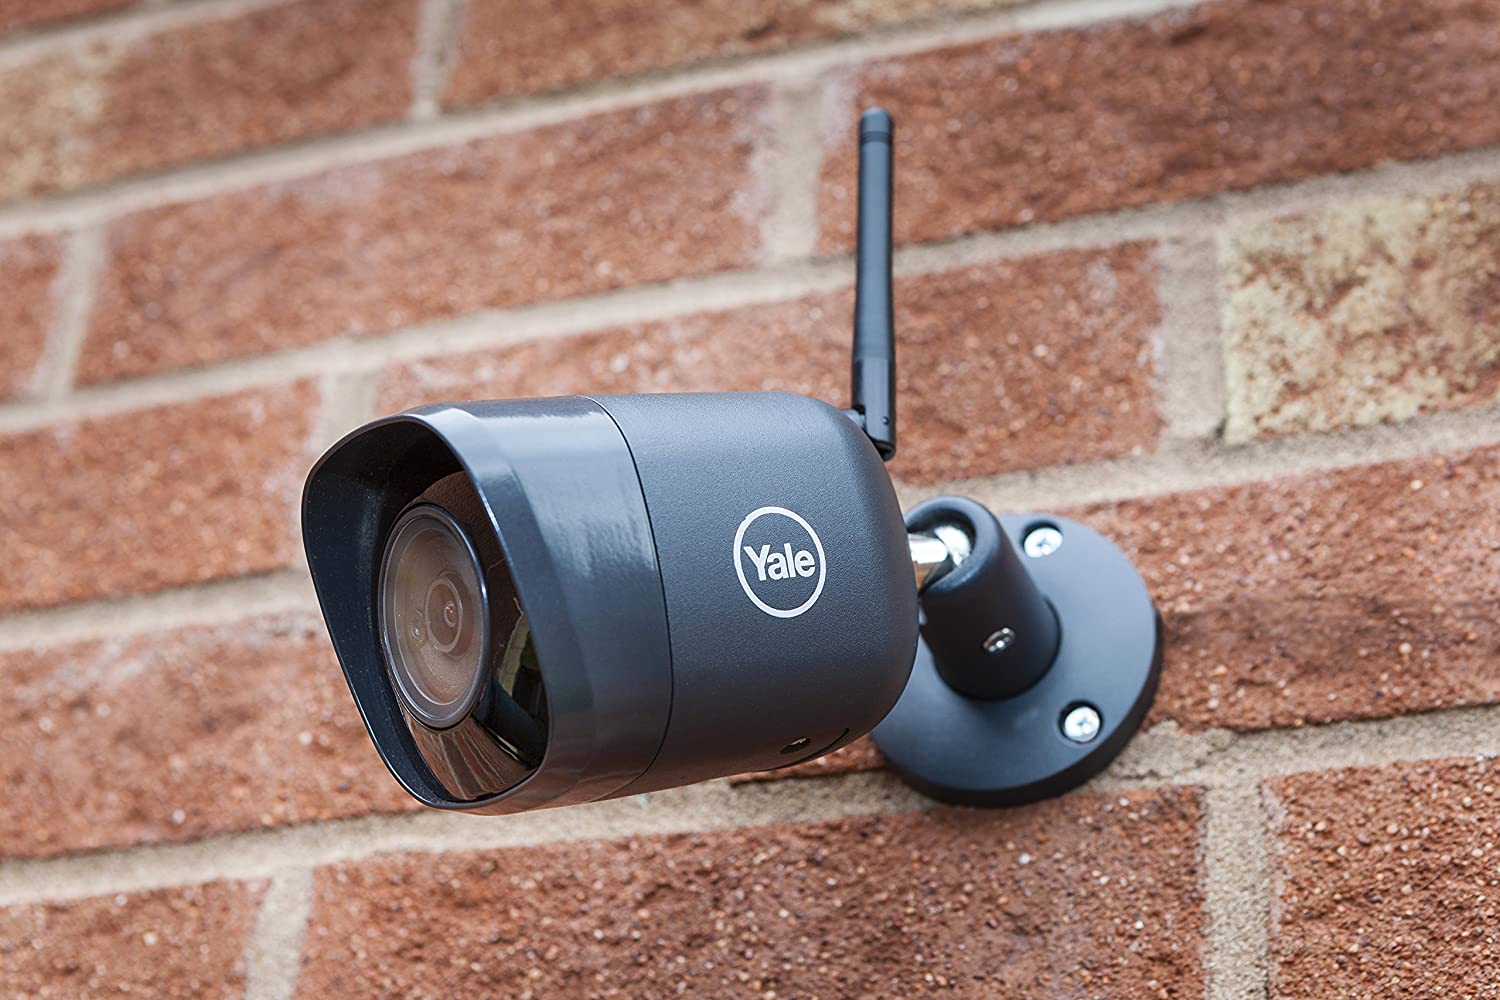 Caméra de surveillance IP extérieure 4mp YALE